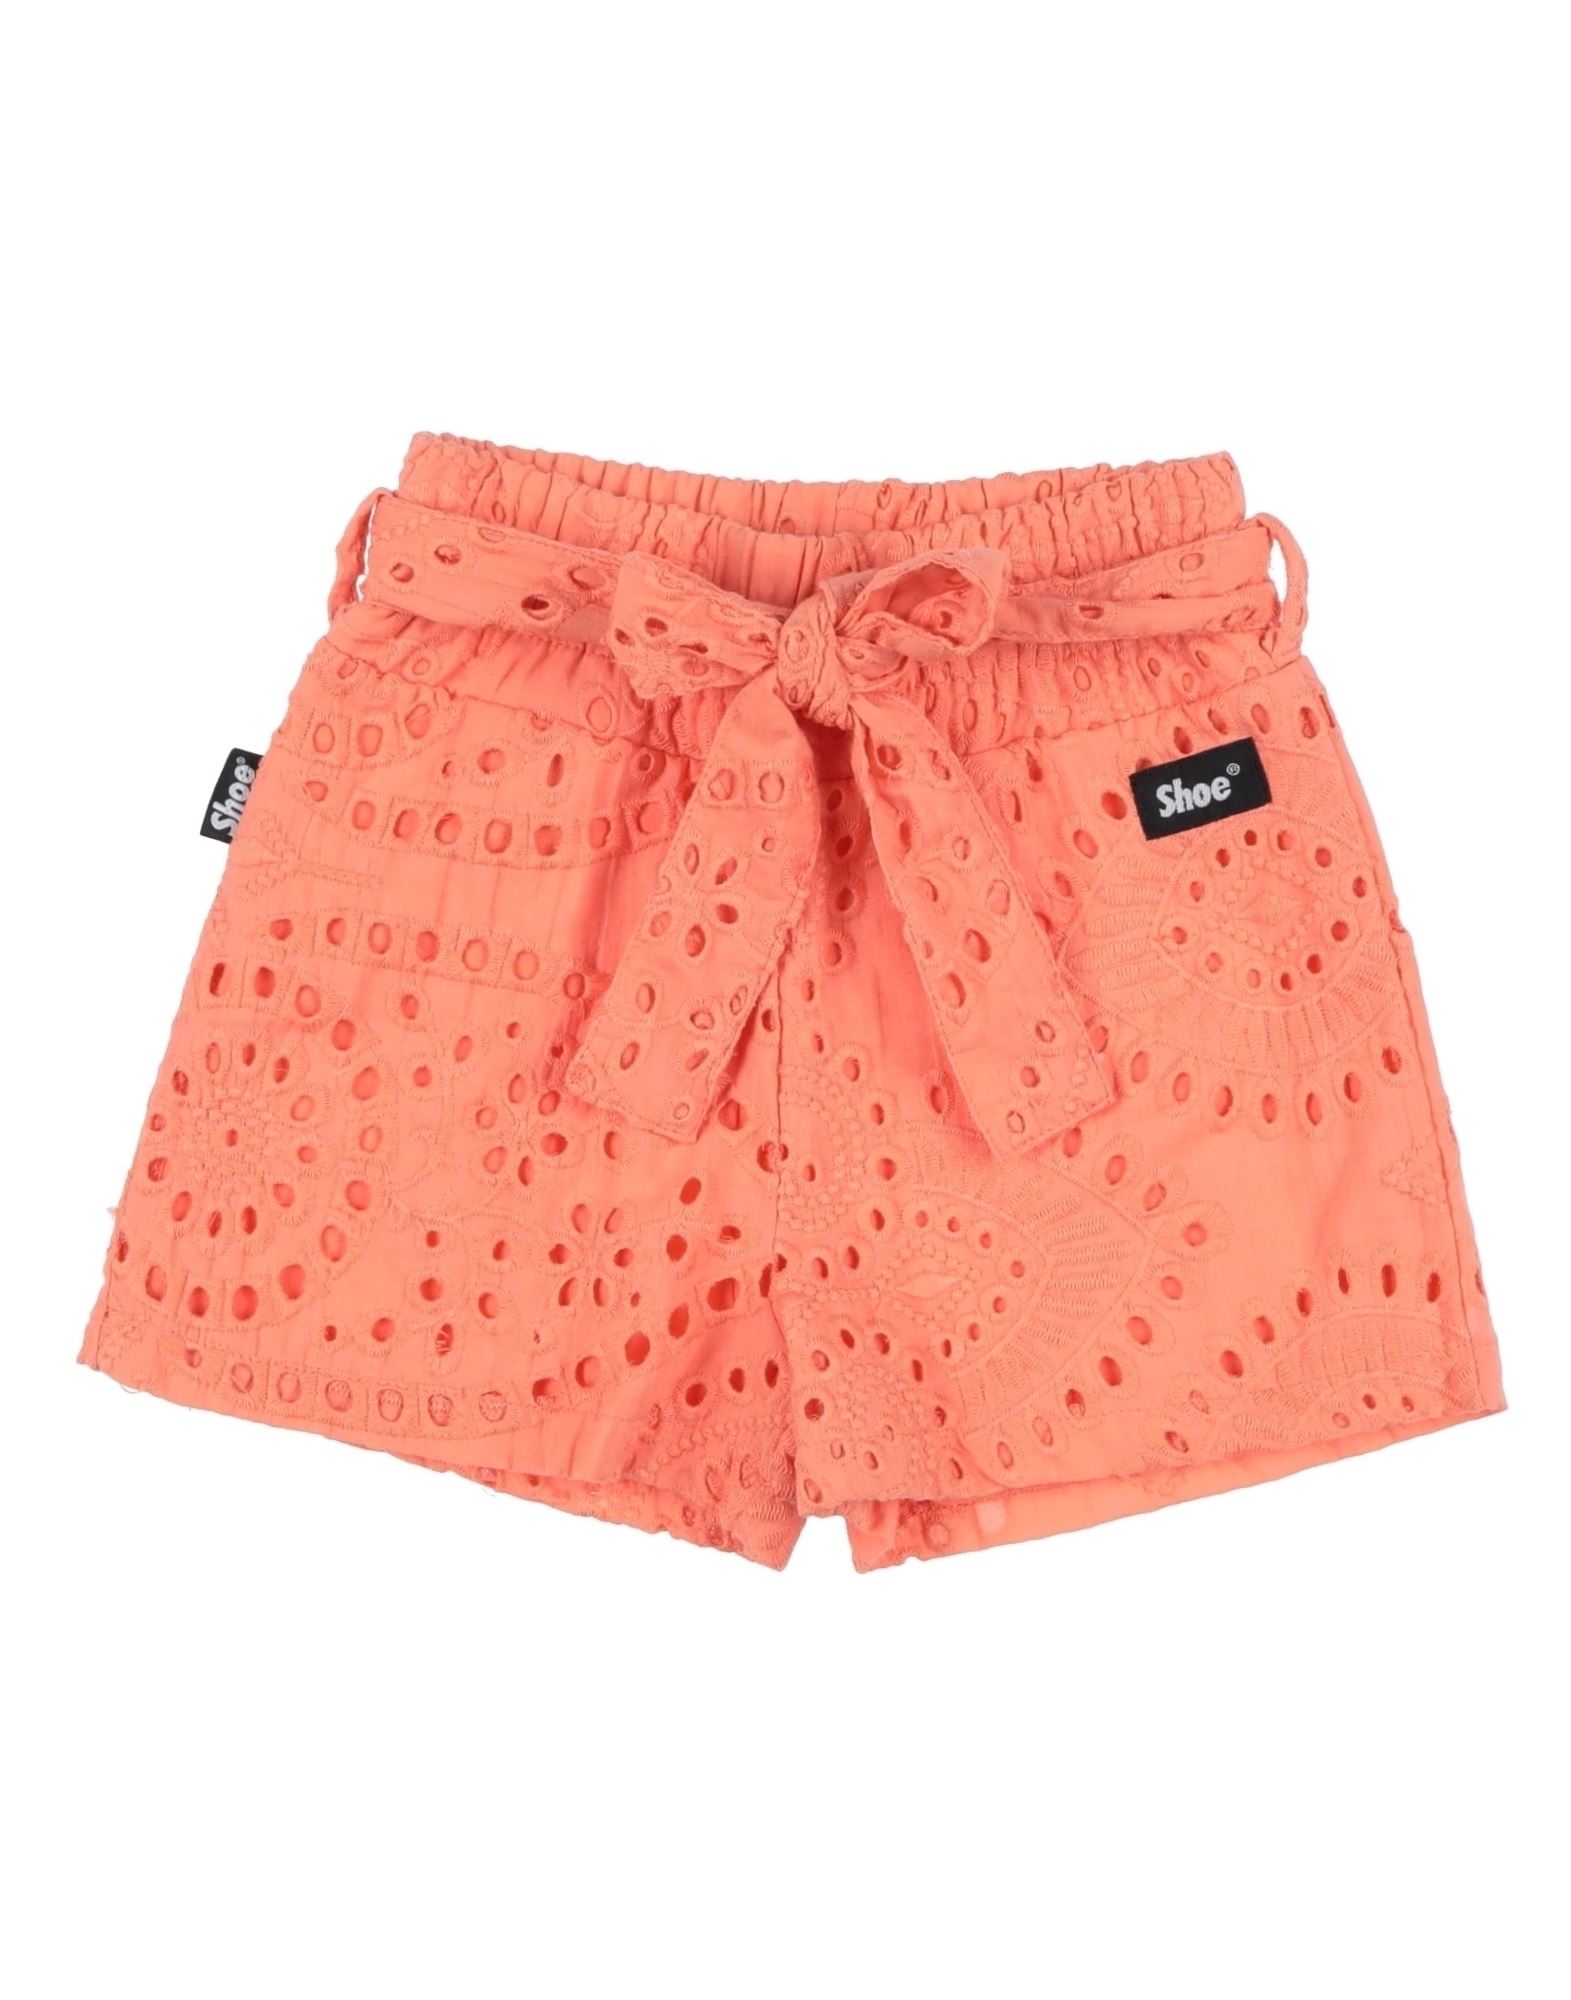 Shoe® Kids' Shoe Toddler Girl Shorts & Bermuda Shorts Salmon Pink Size 6 Cotton